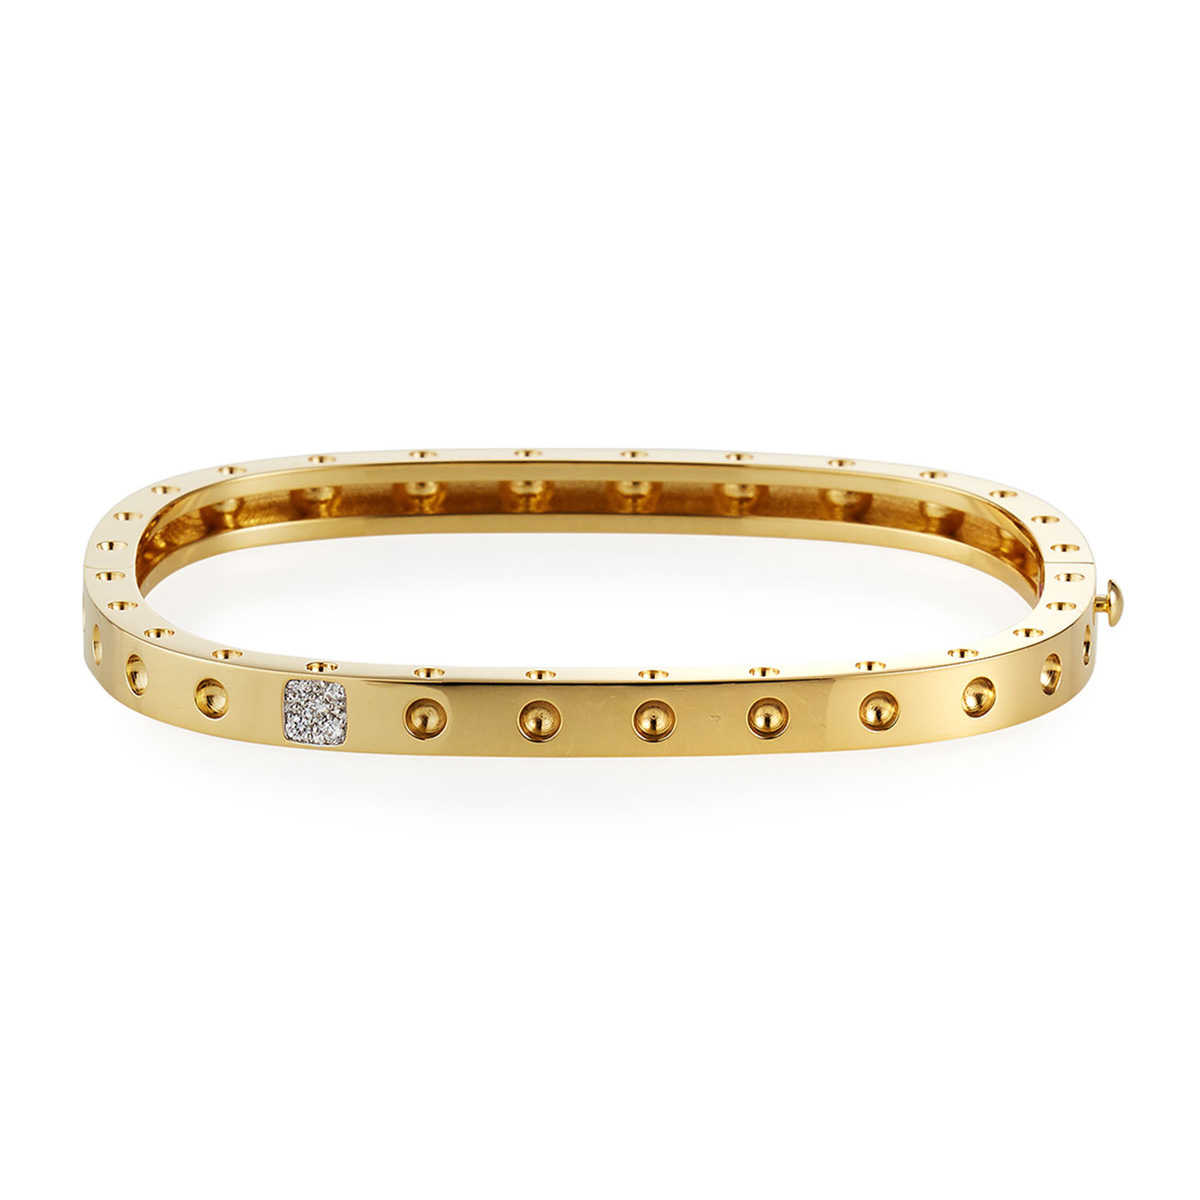 Bracciale in oro giallo 18 carati OEM all'ingrosso per gioielli OEM / ODM 20 anni di esperienza nella produzione di gioielli personalizzati